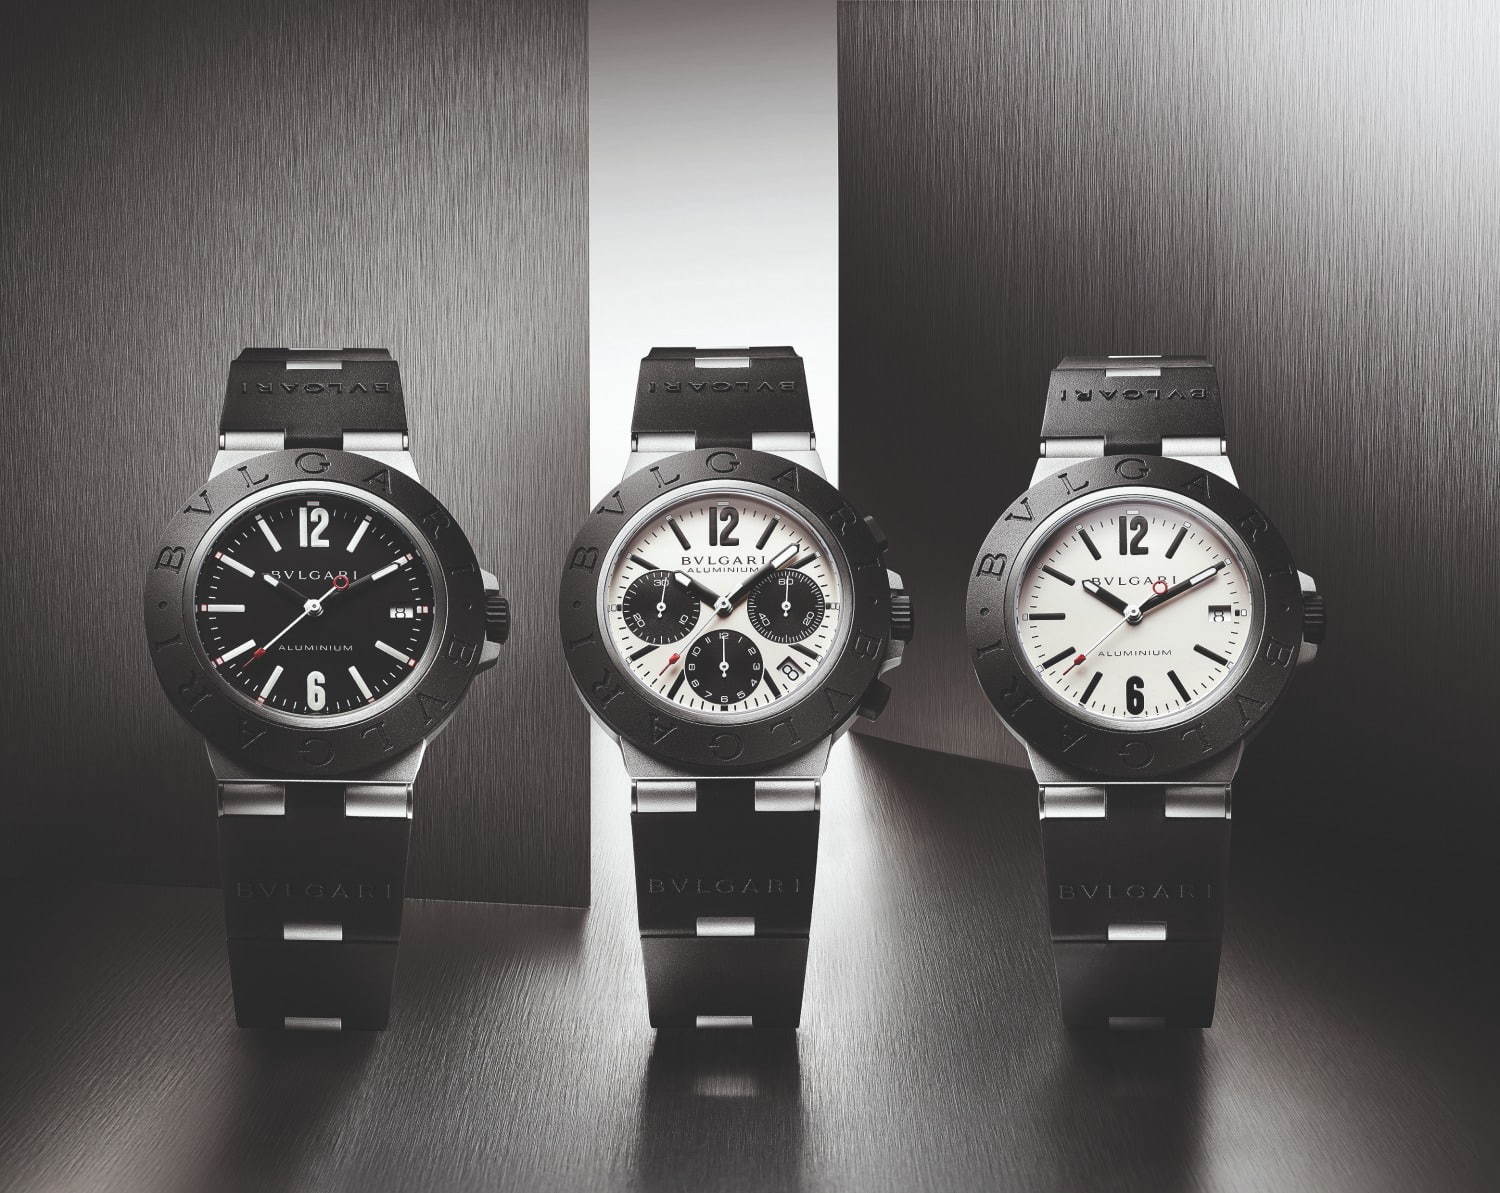 ブルガリのユニセックス腕時計「ブルガリ アルミニウム」が一新、優れ 